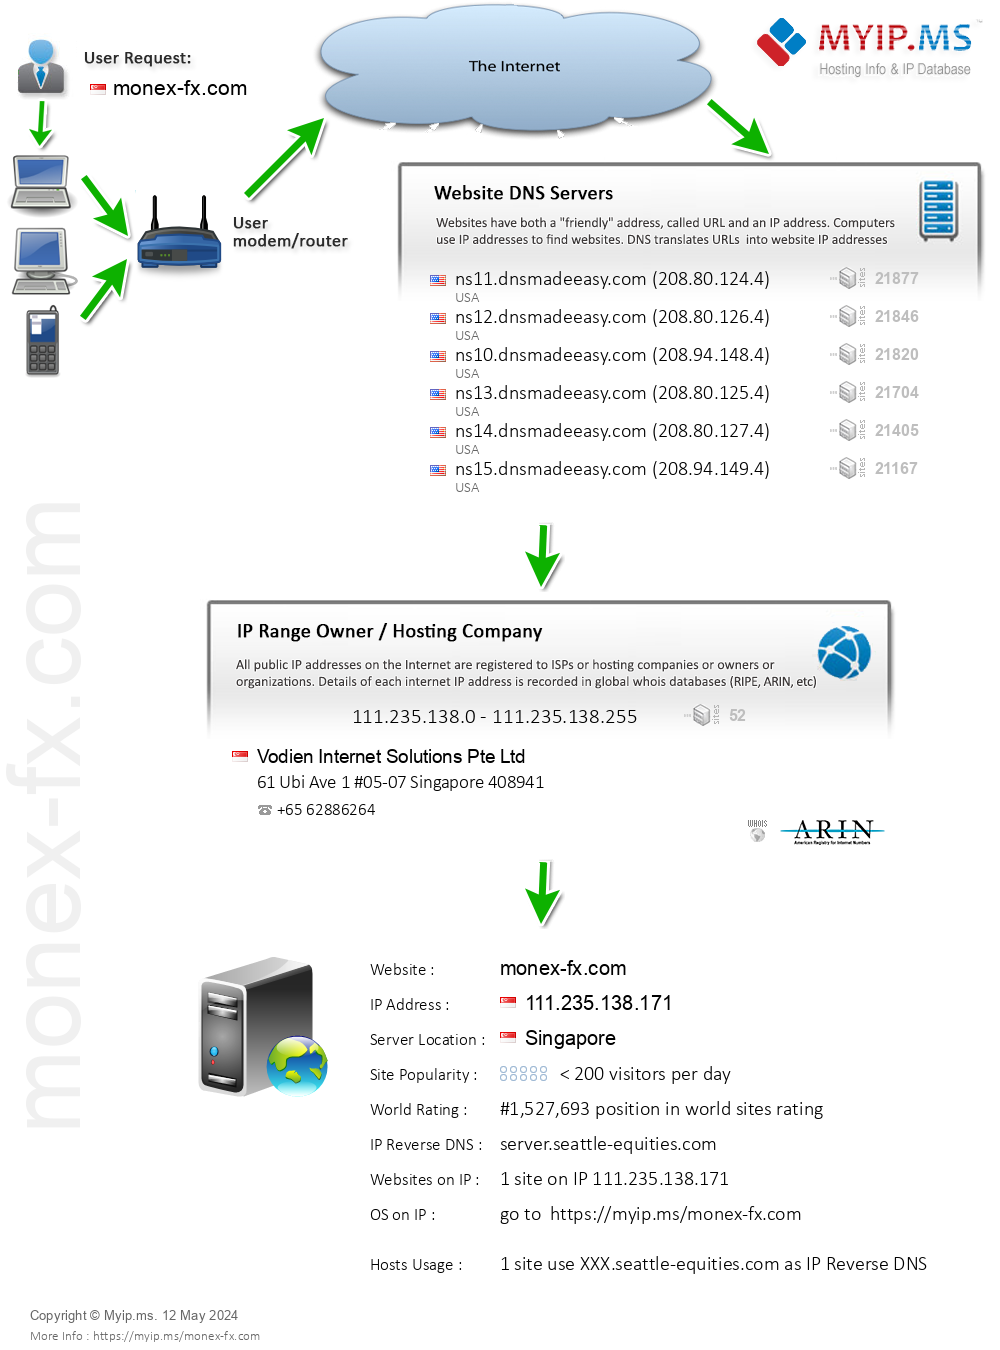 Monex-fx.com - Website Hosting Visual IP Diagram